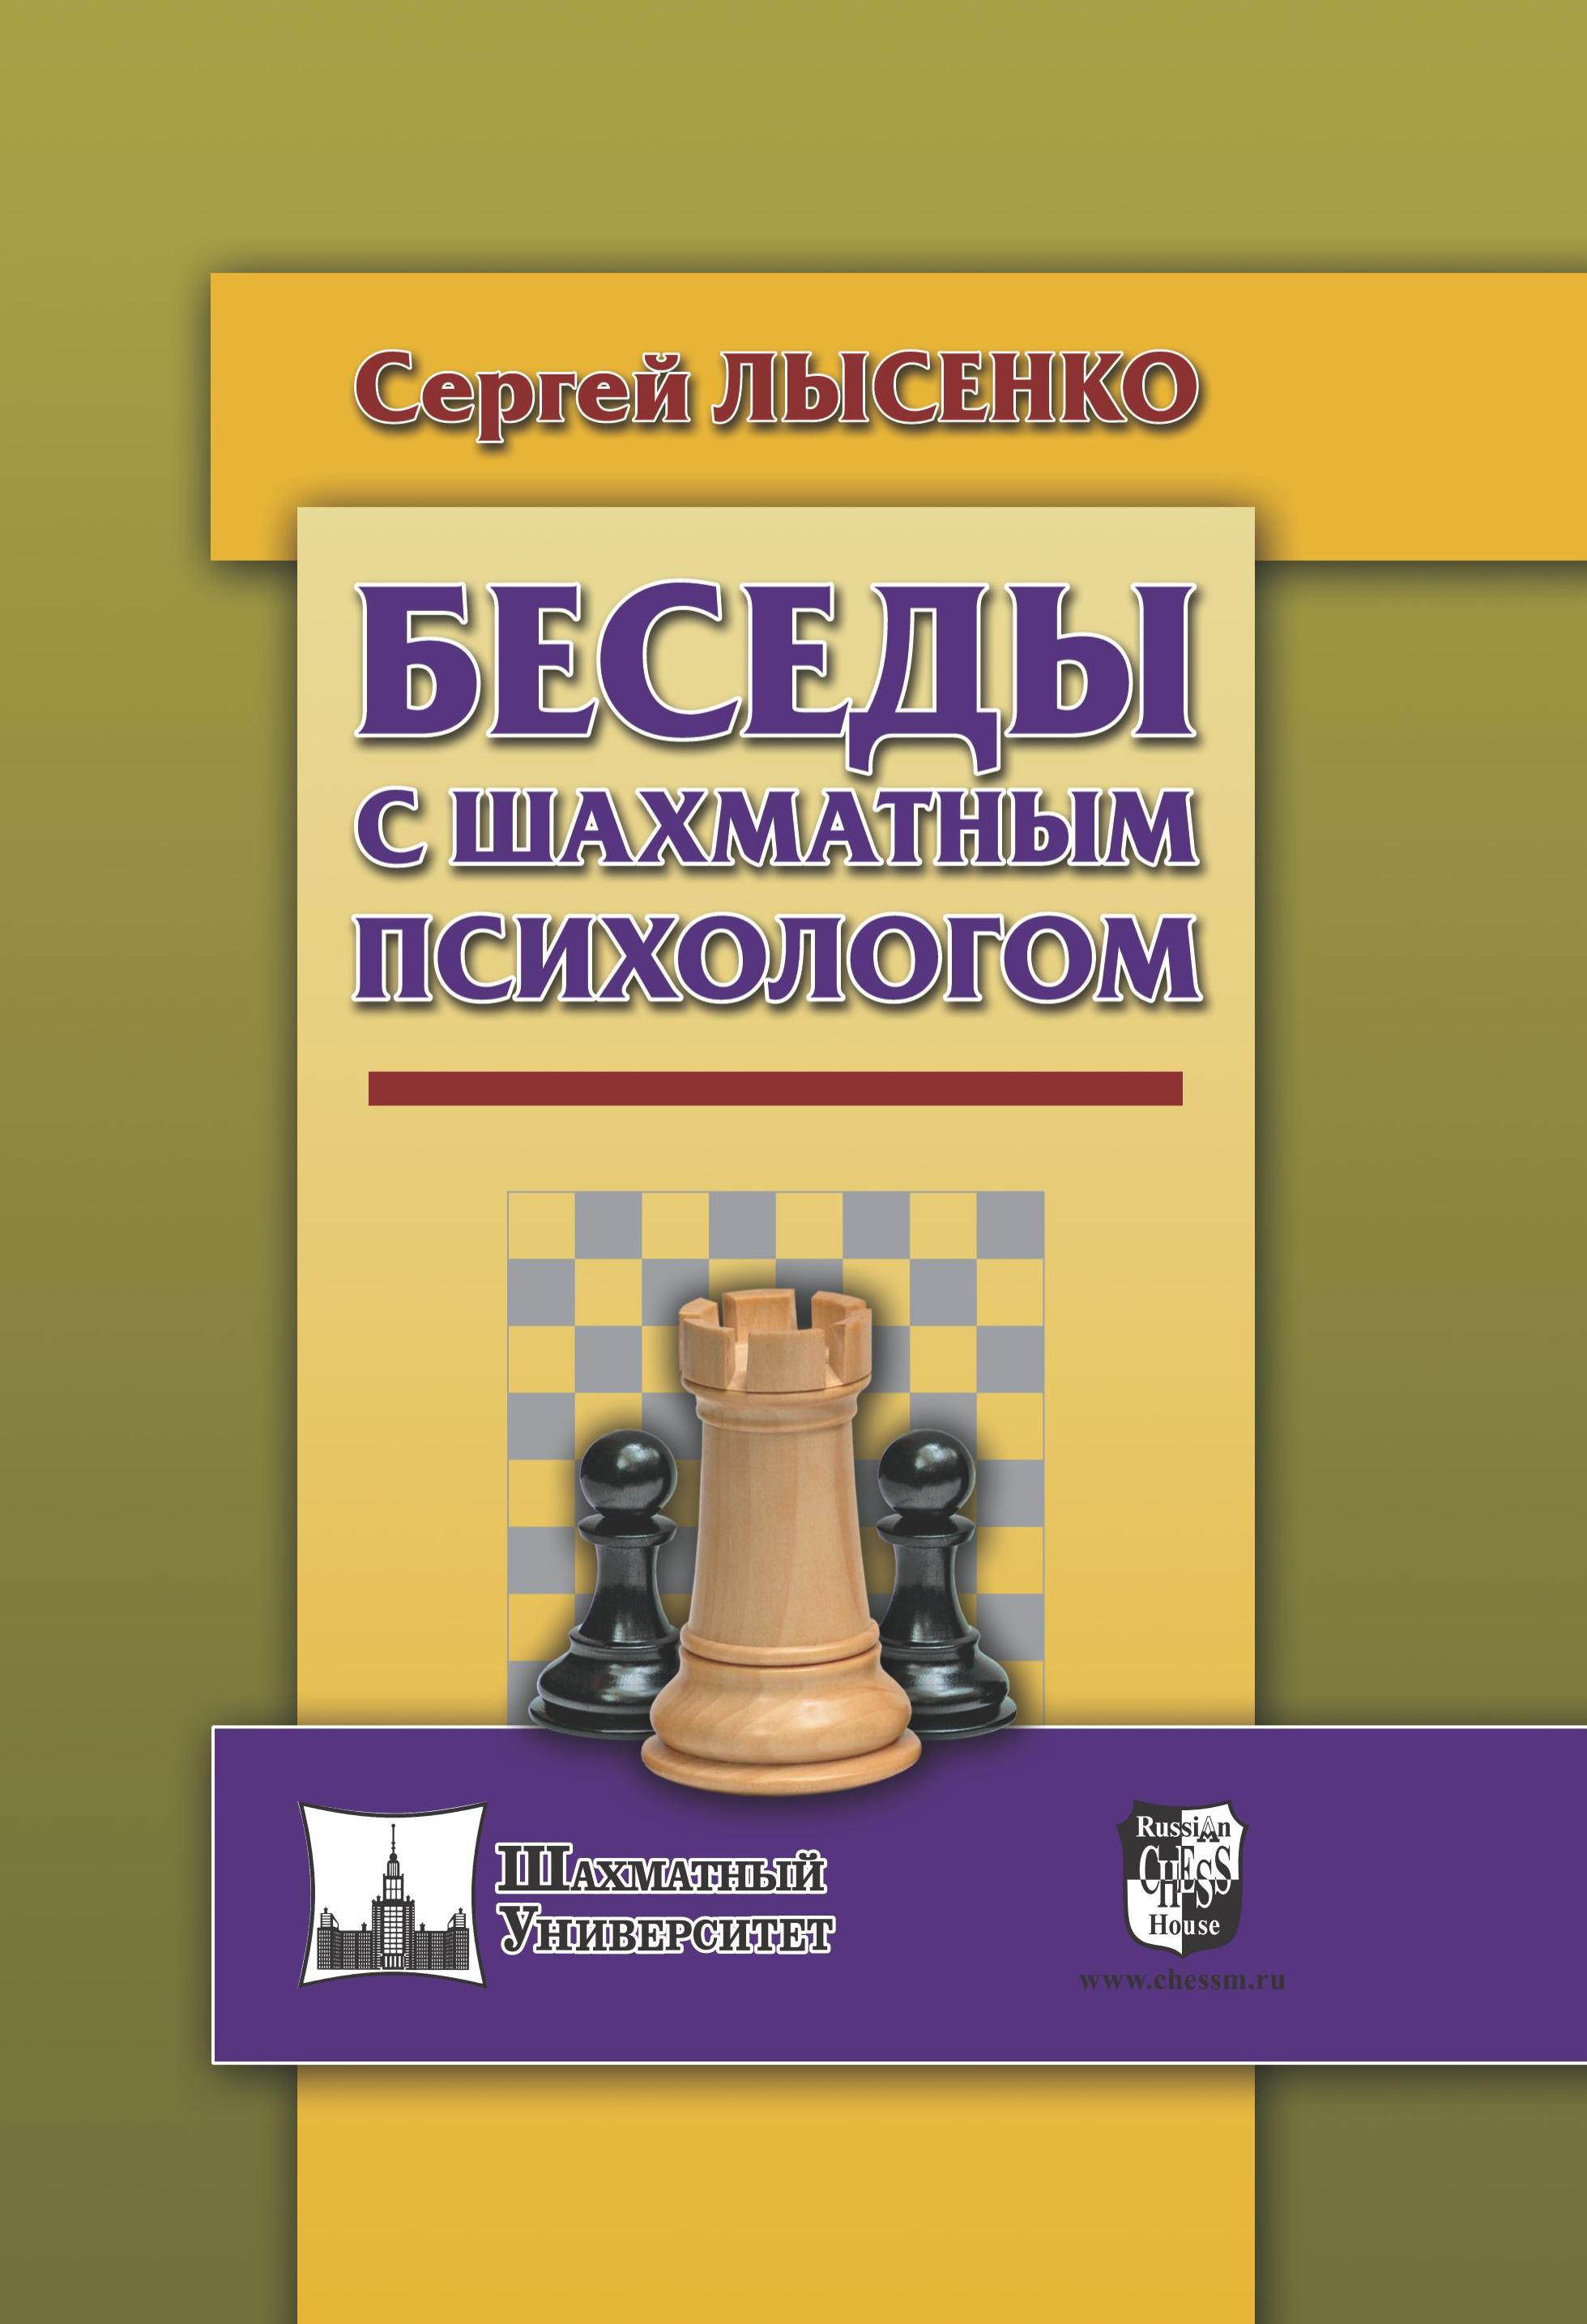 Книга Беседы с шахматным психологом из серии , созданная Сергей Лысенко, может относится к жанру Психотерапия и консультирование, Спорт, фитнес. Стоимость электронной книги Беседы с шахматным психологом с идентификатором 25452535 составляет 239.00 руб.